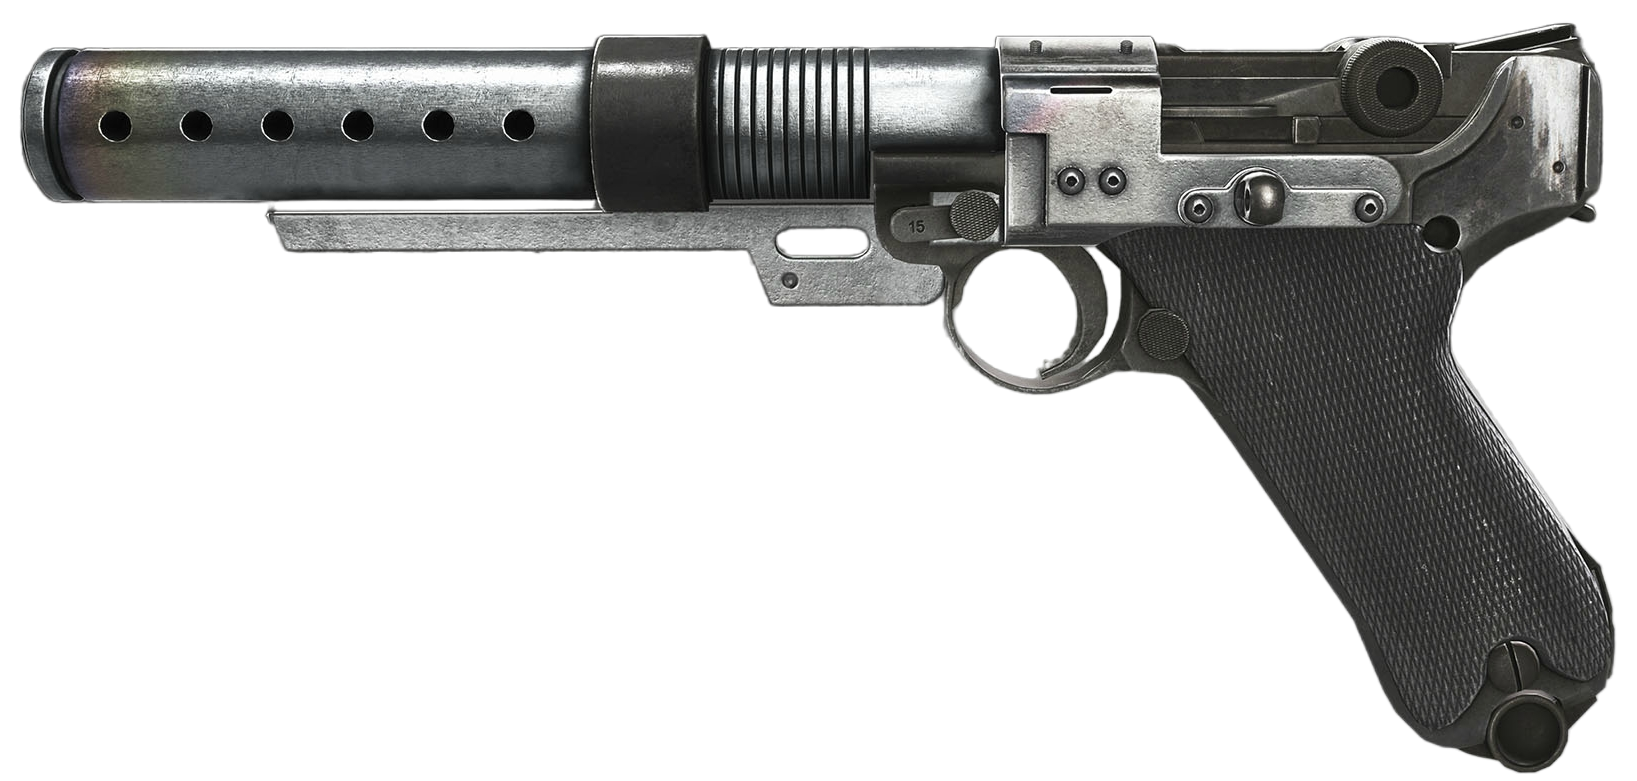 star wars blaster gun